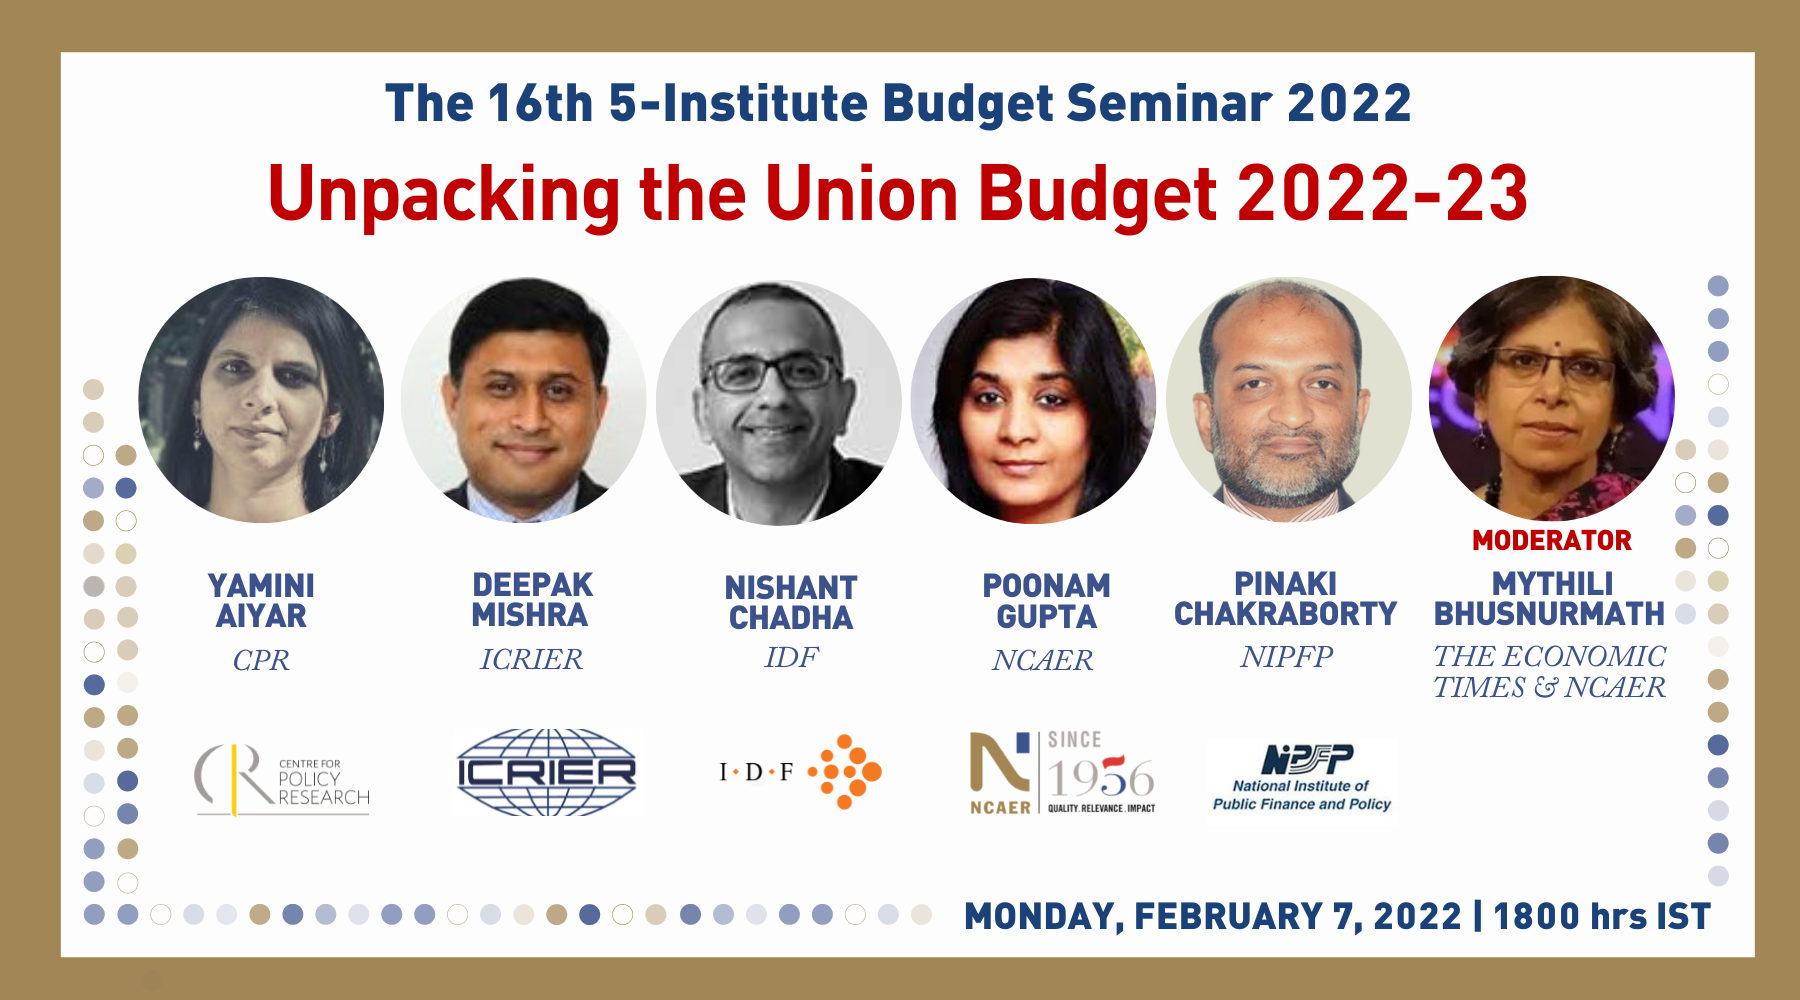 The 16th 5-Institute Budget Seminar 2022